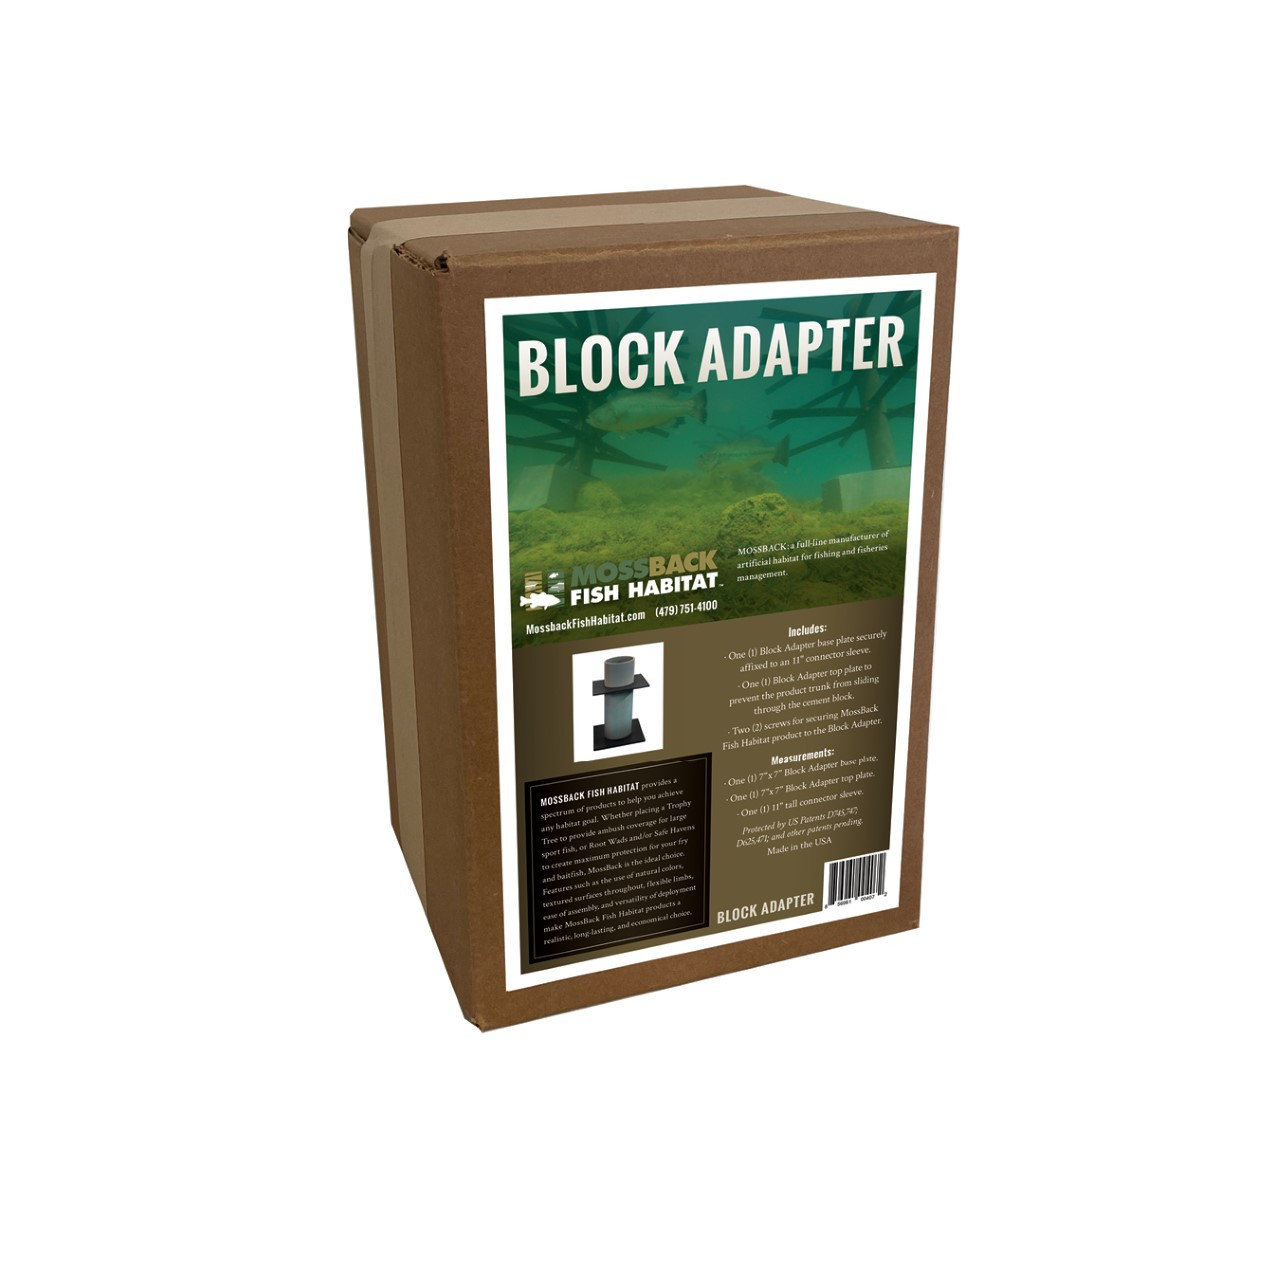 Block Adapter box